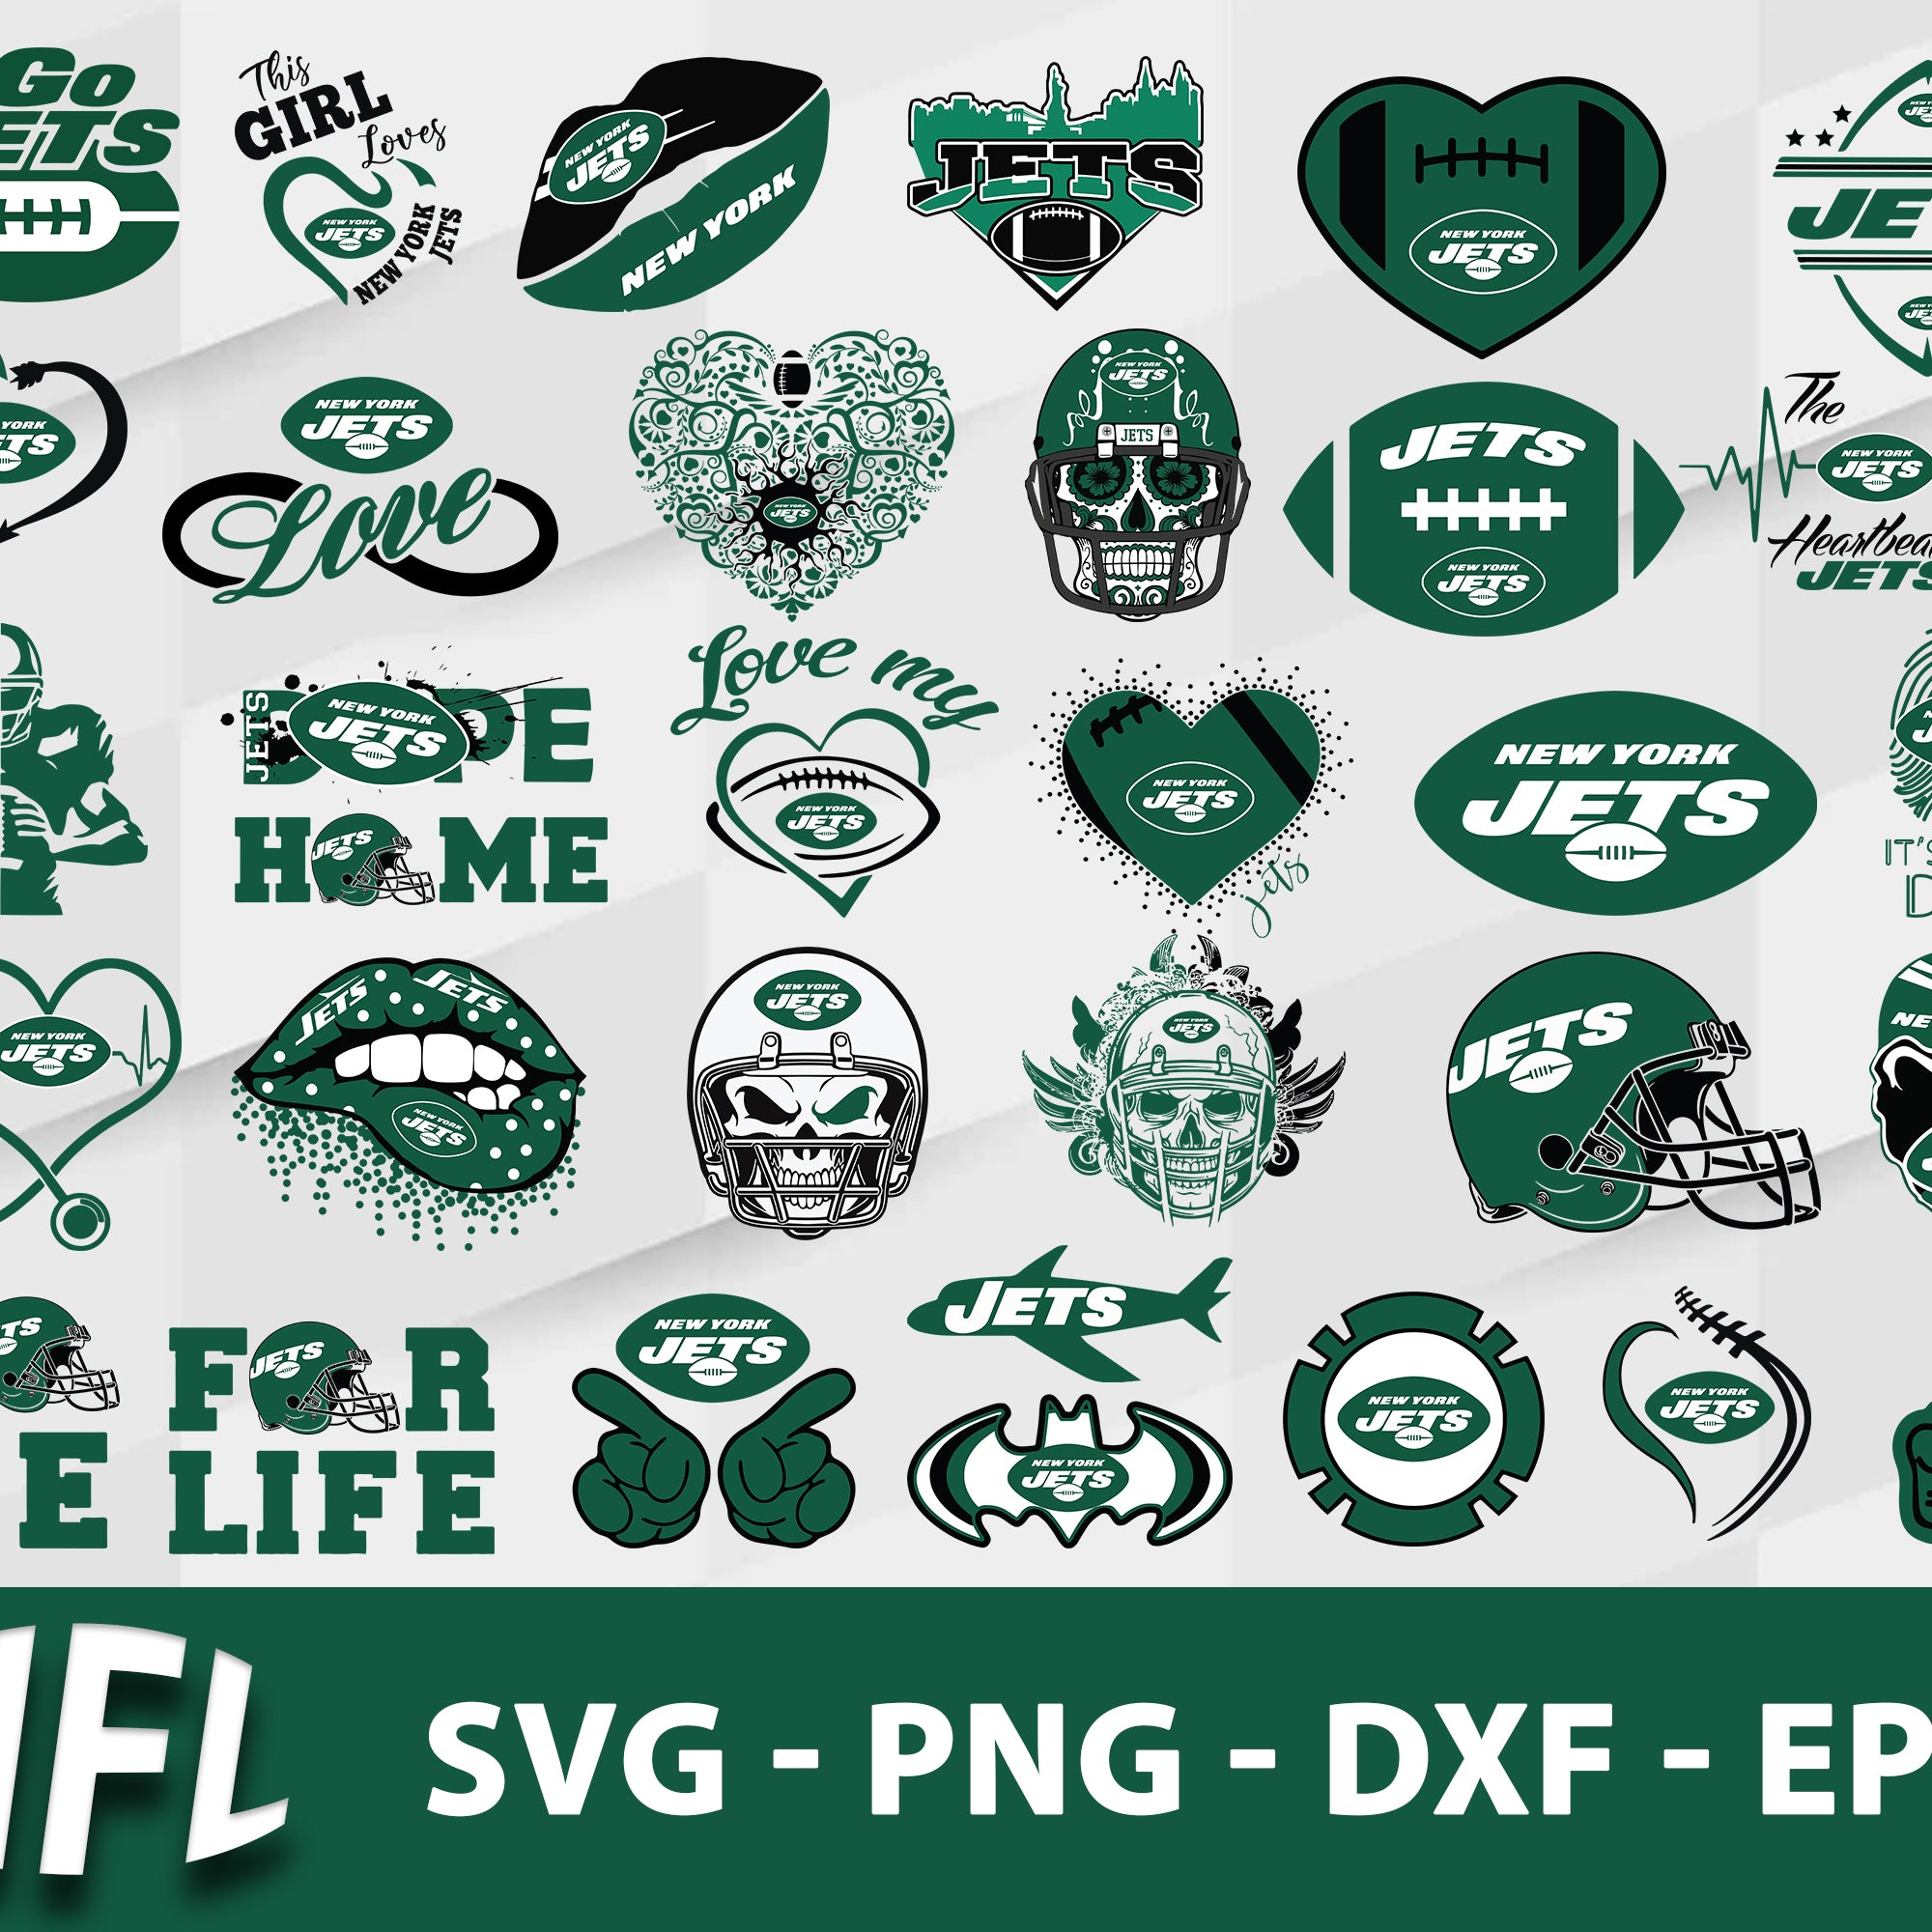 New York Jets Svg Bundle, New York Jets Svg, Sport Svg, Nfl Svg, Png, Dxf, Eps Digital File.